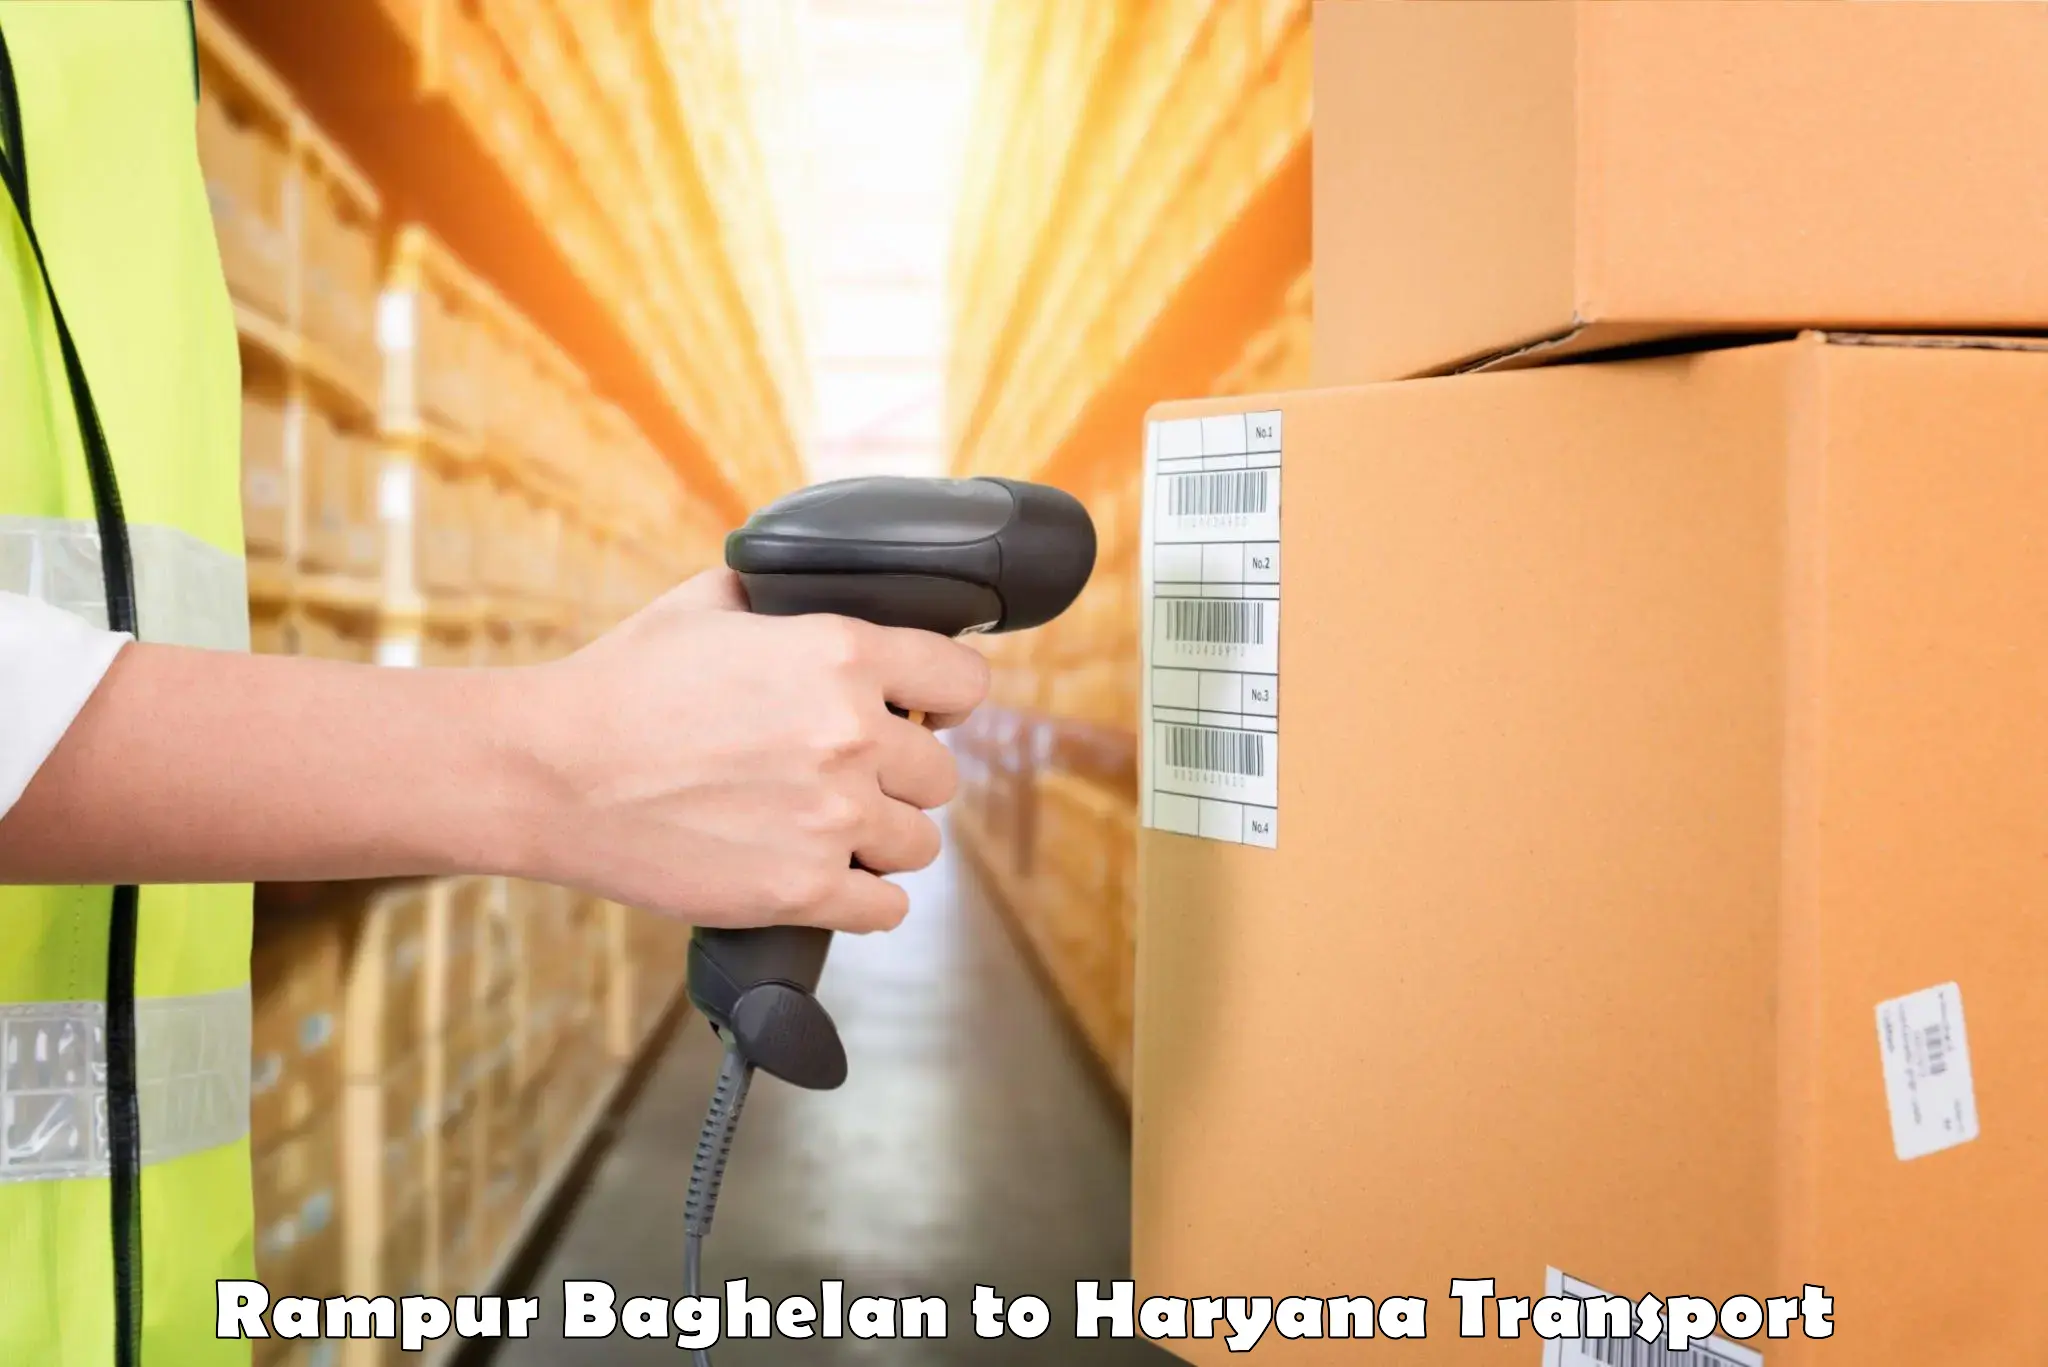 Furniture transport service Rampur Baghelan to Naraingarh